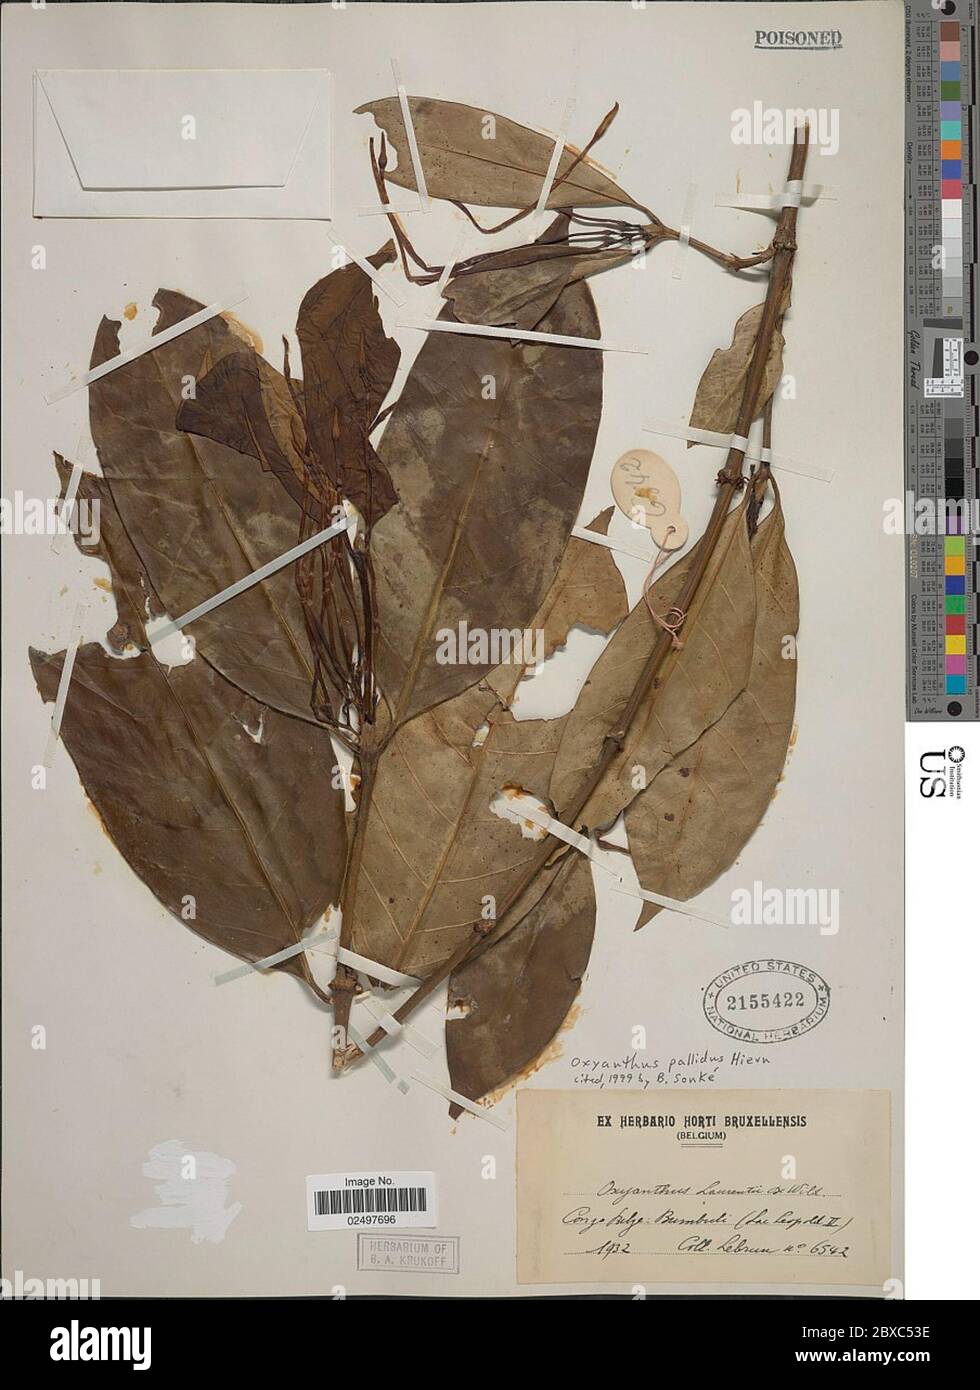 Oxyanthus pallidus Hiern Oxyanthus pallidus Hiern. Stock Photo